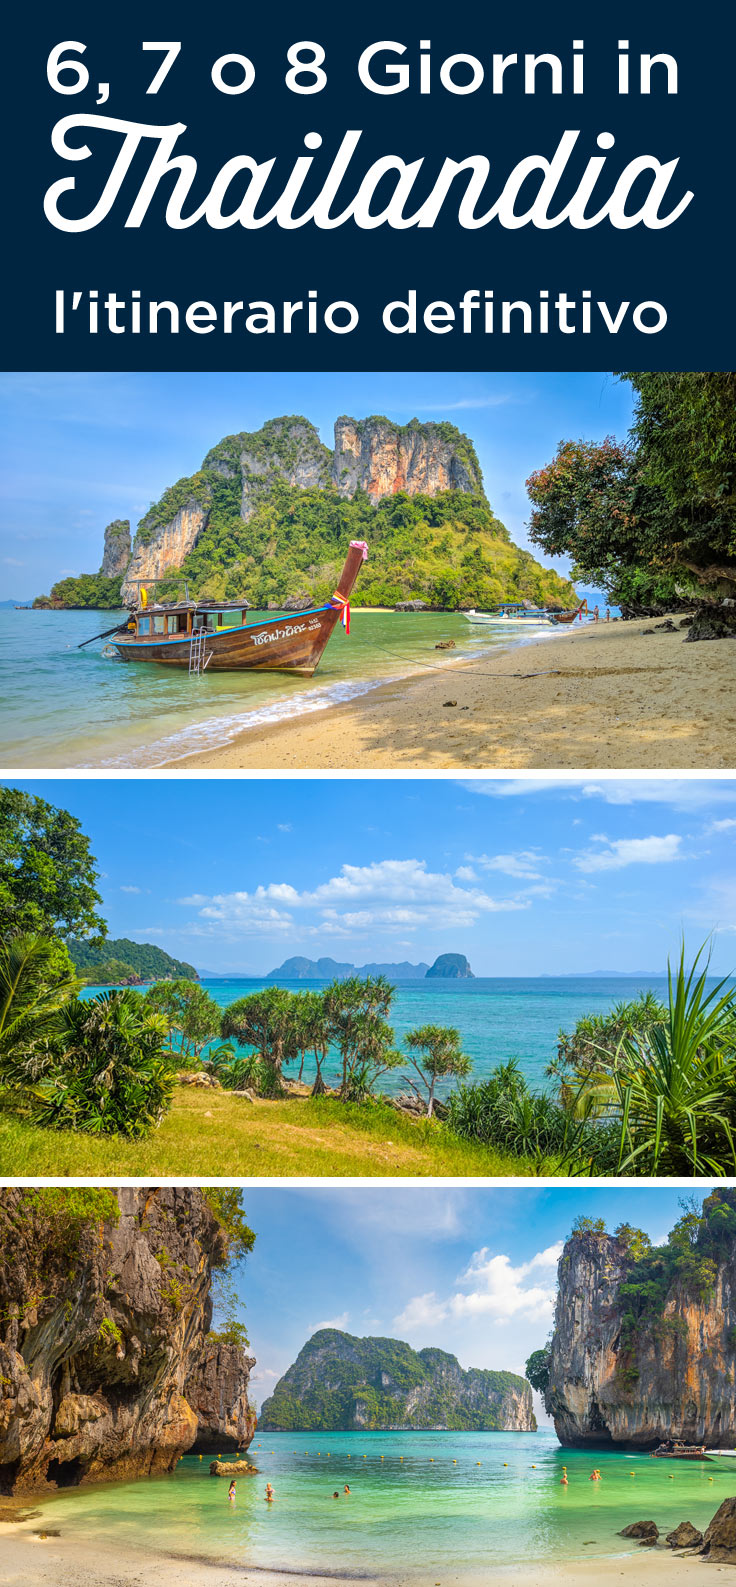 Thailandia in 6 7 8 giorni itinerario